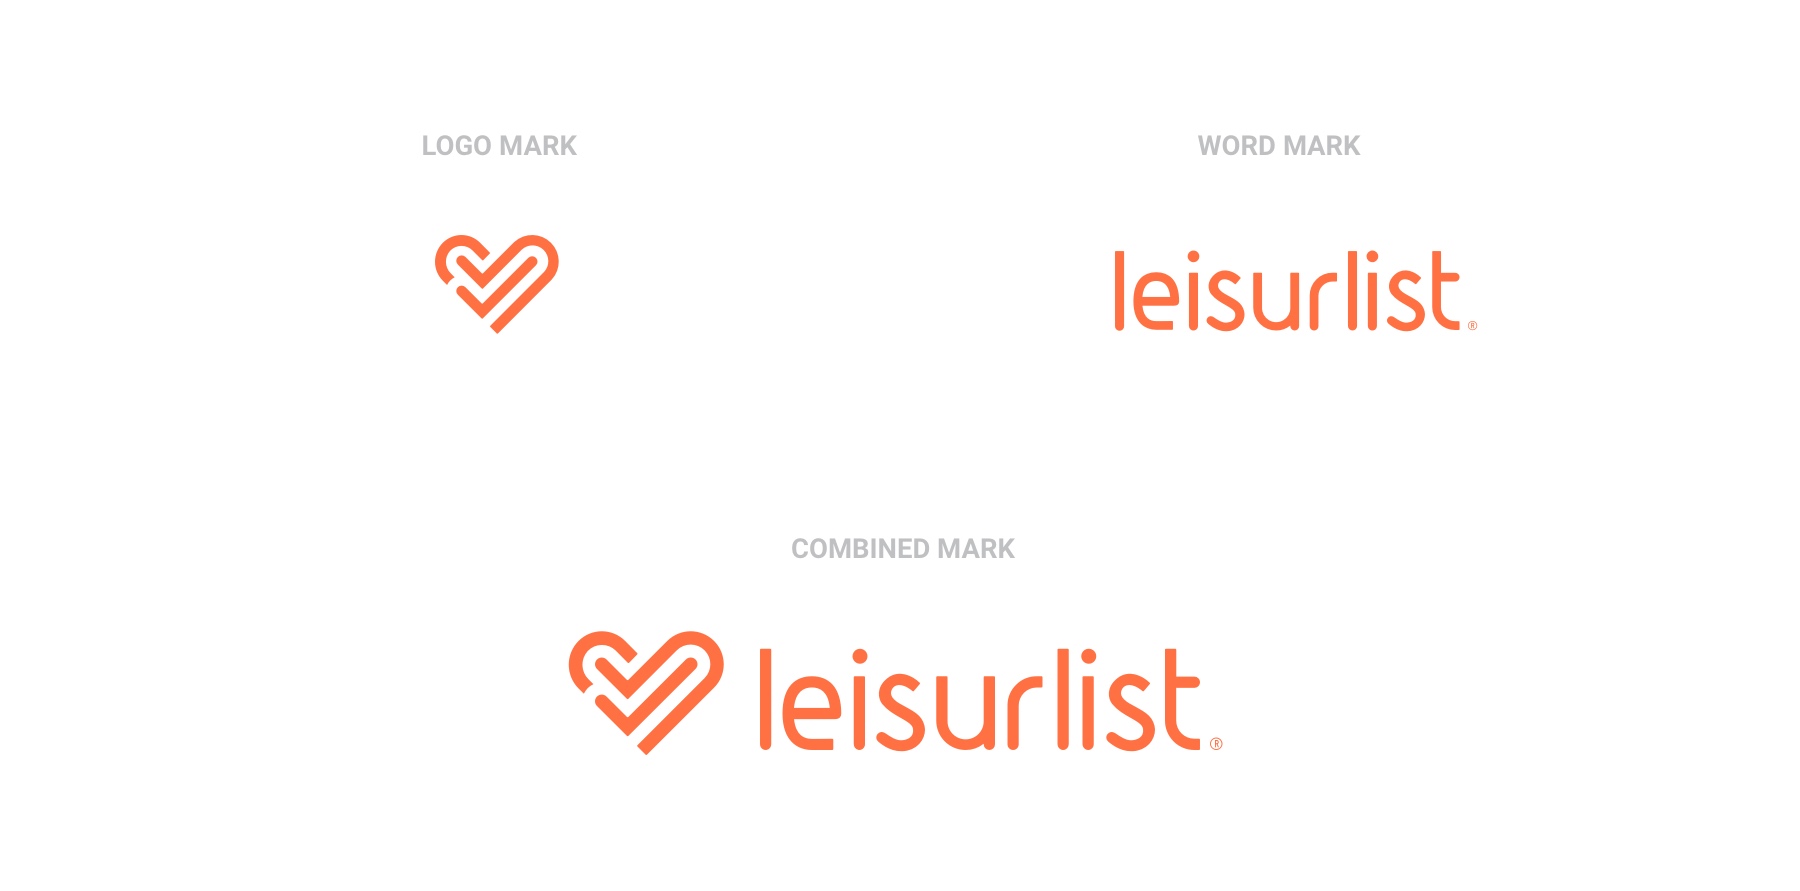 leisurlist logo marks